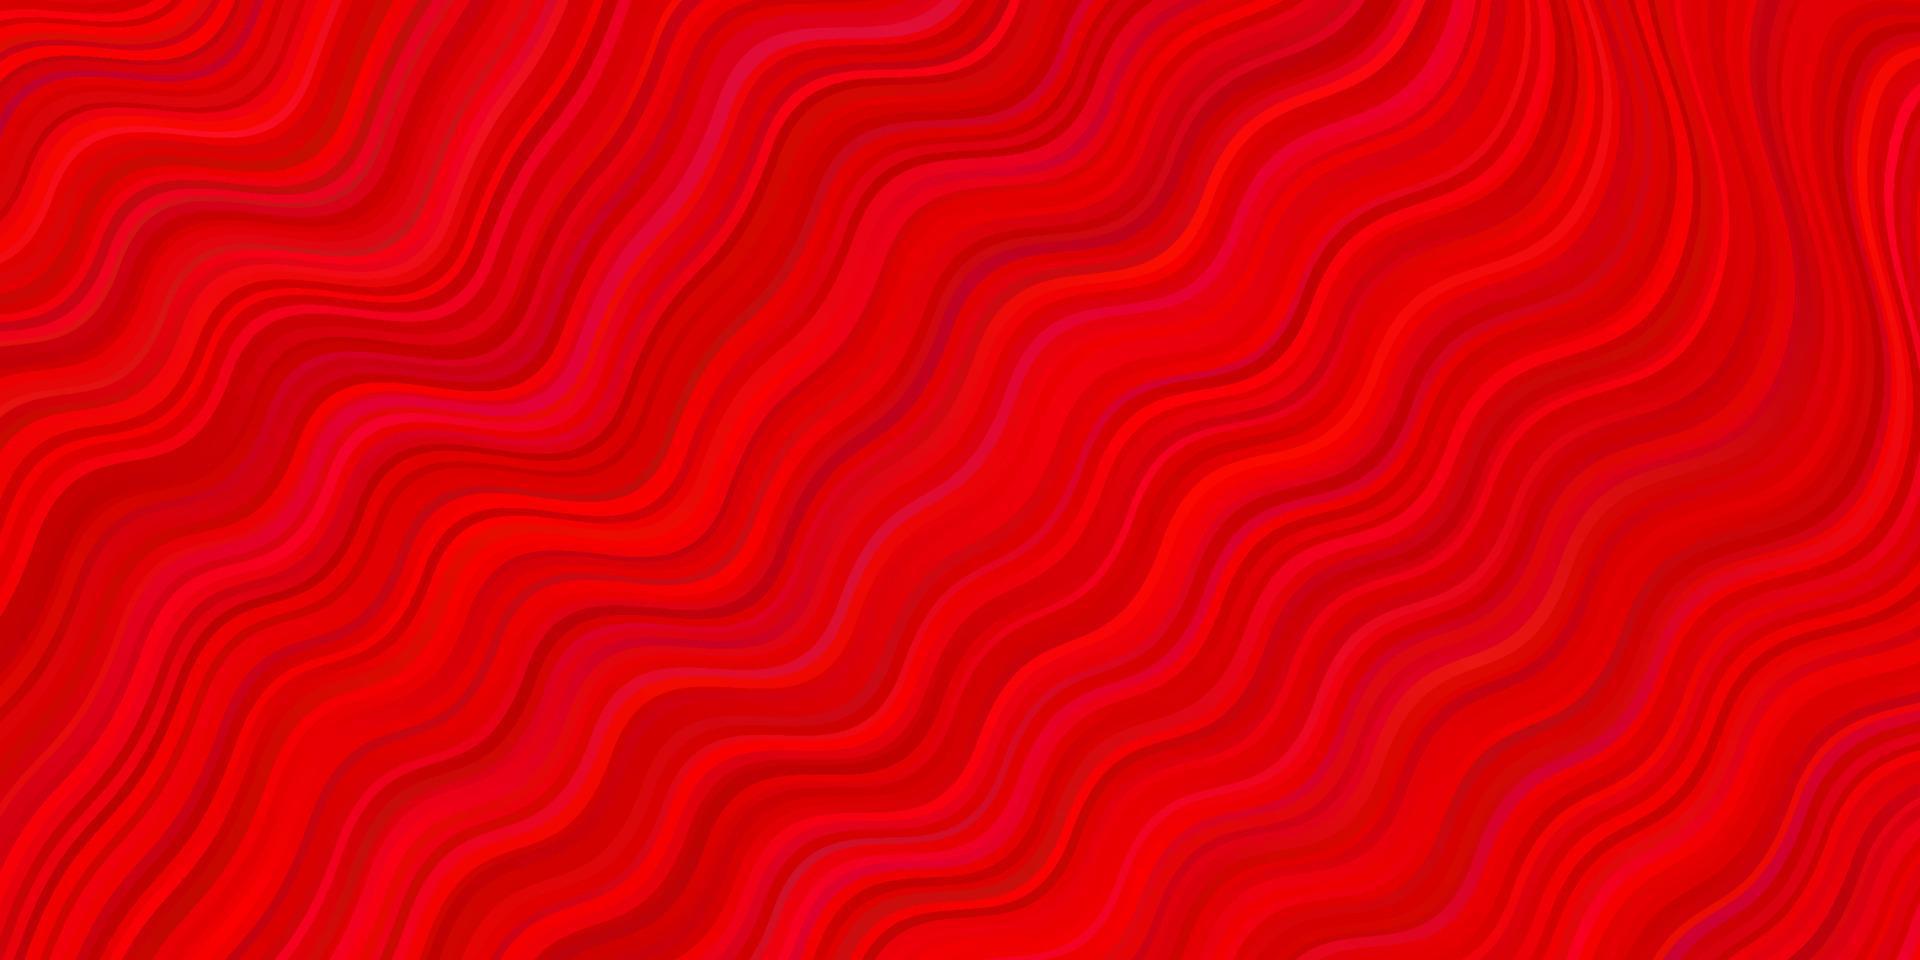 ljusröd vektor bakgrund med böjda linjer.